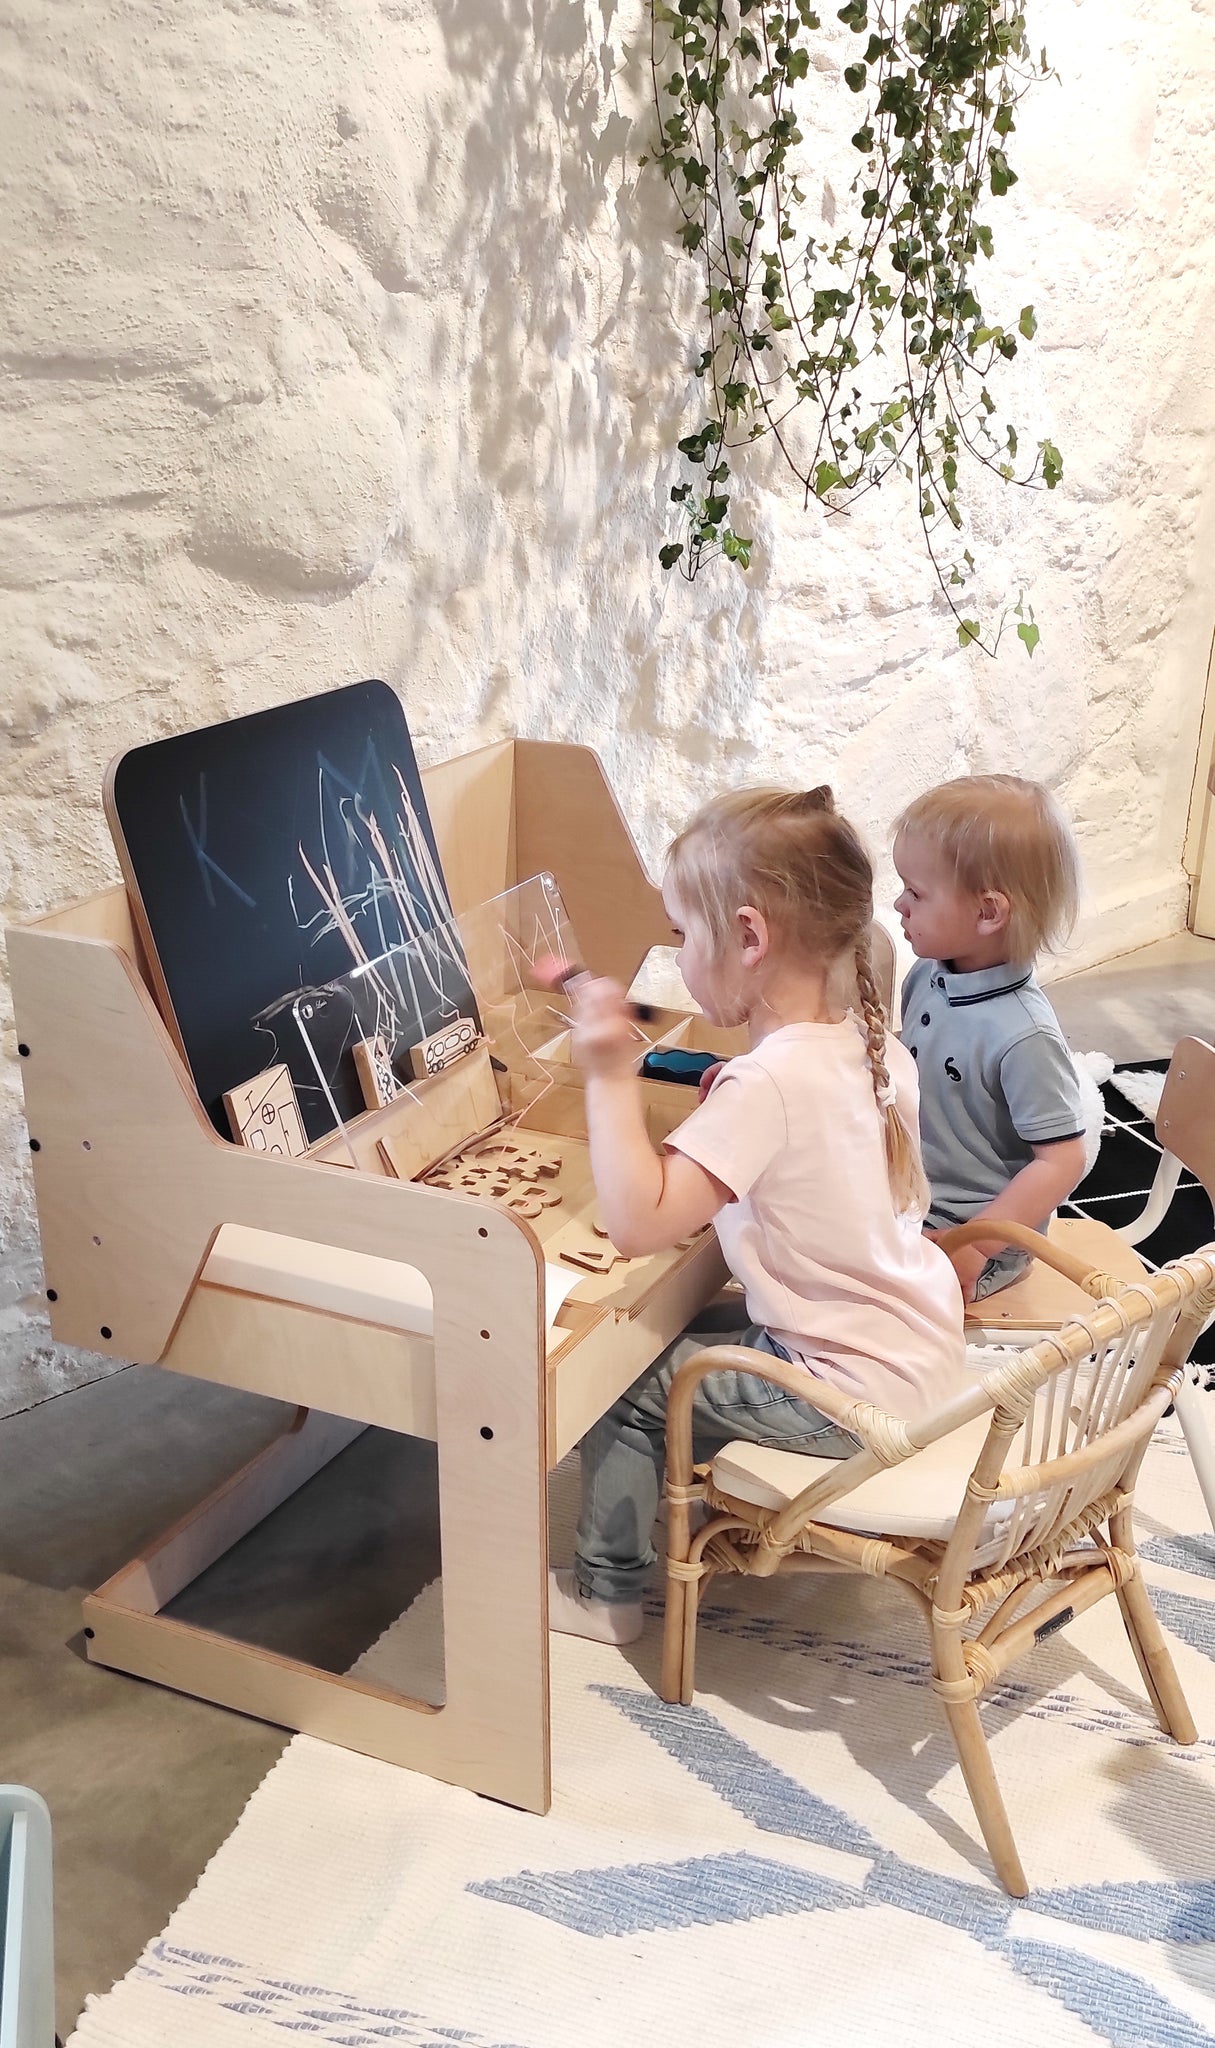 Bureau évolutif et chaise Montessori – Le Petit Montessori